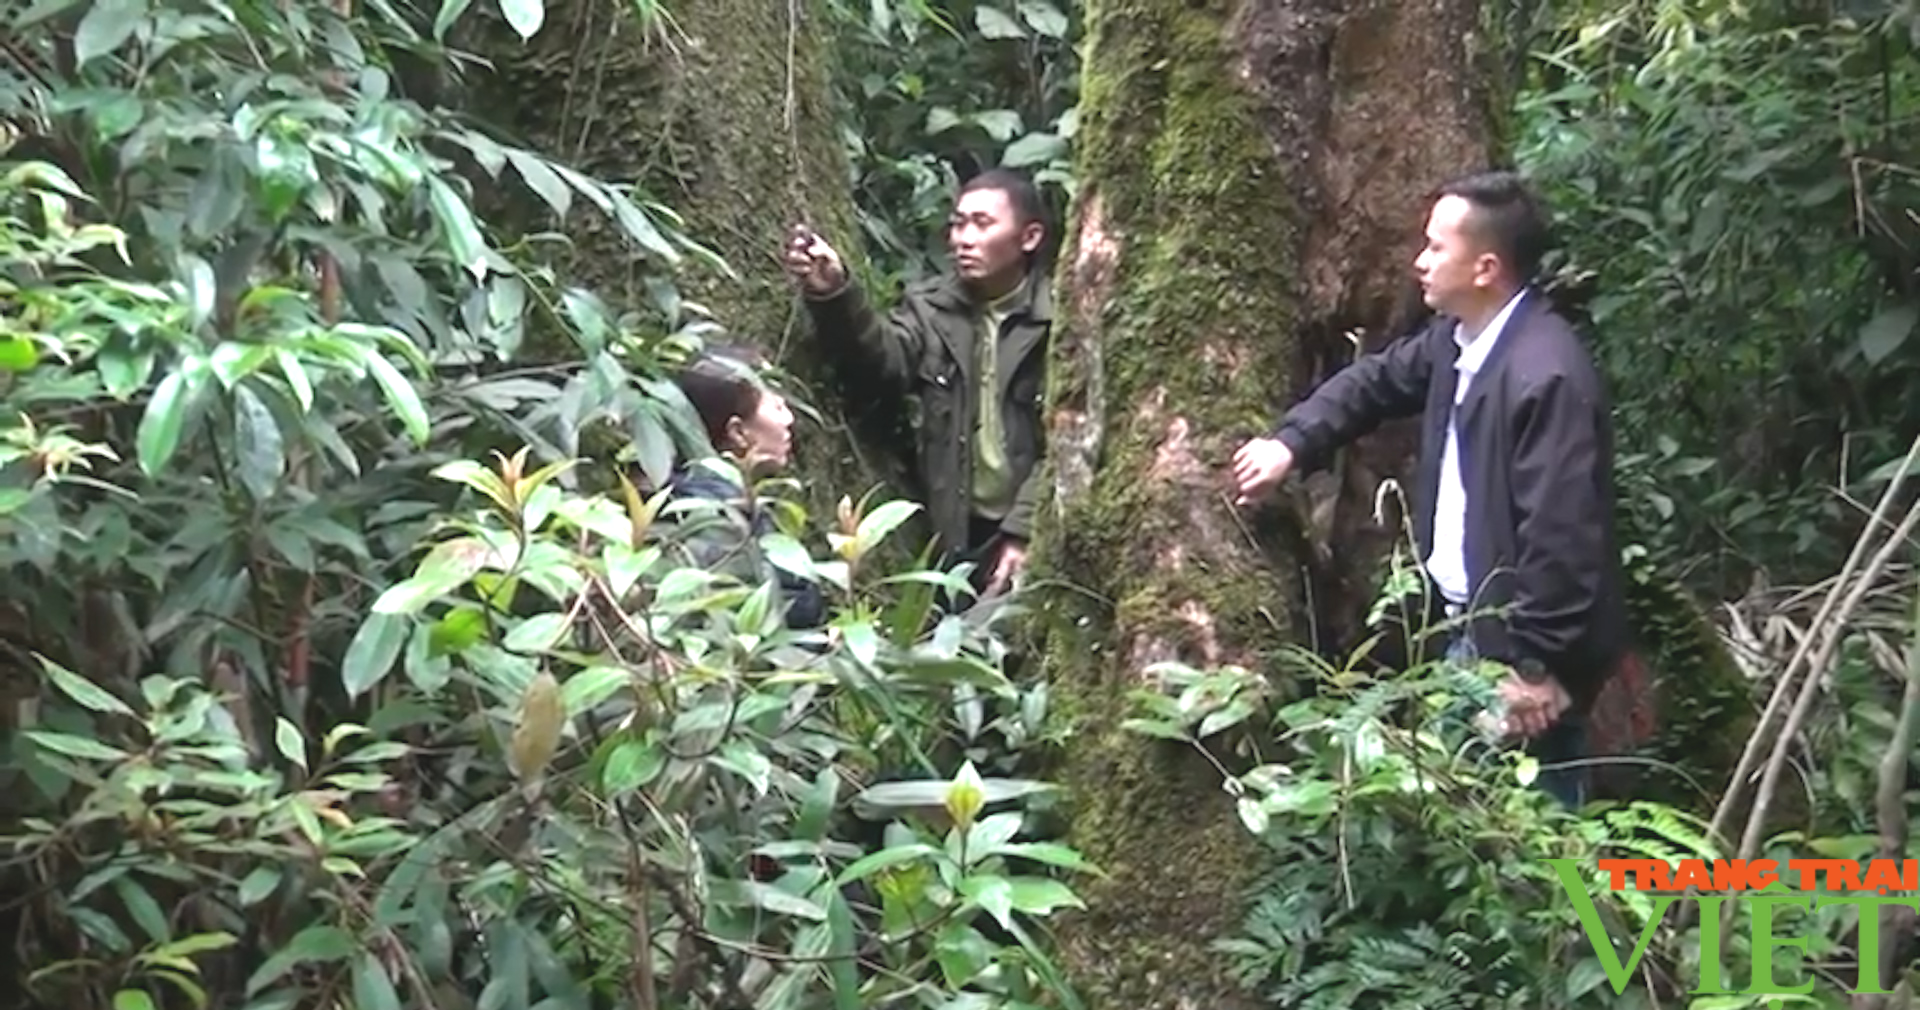 Quản lý, bảo vệ tốt diện tích rừng đặc dụng Tà Xùa - Ảnh 5.